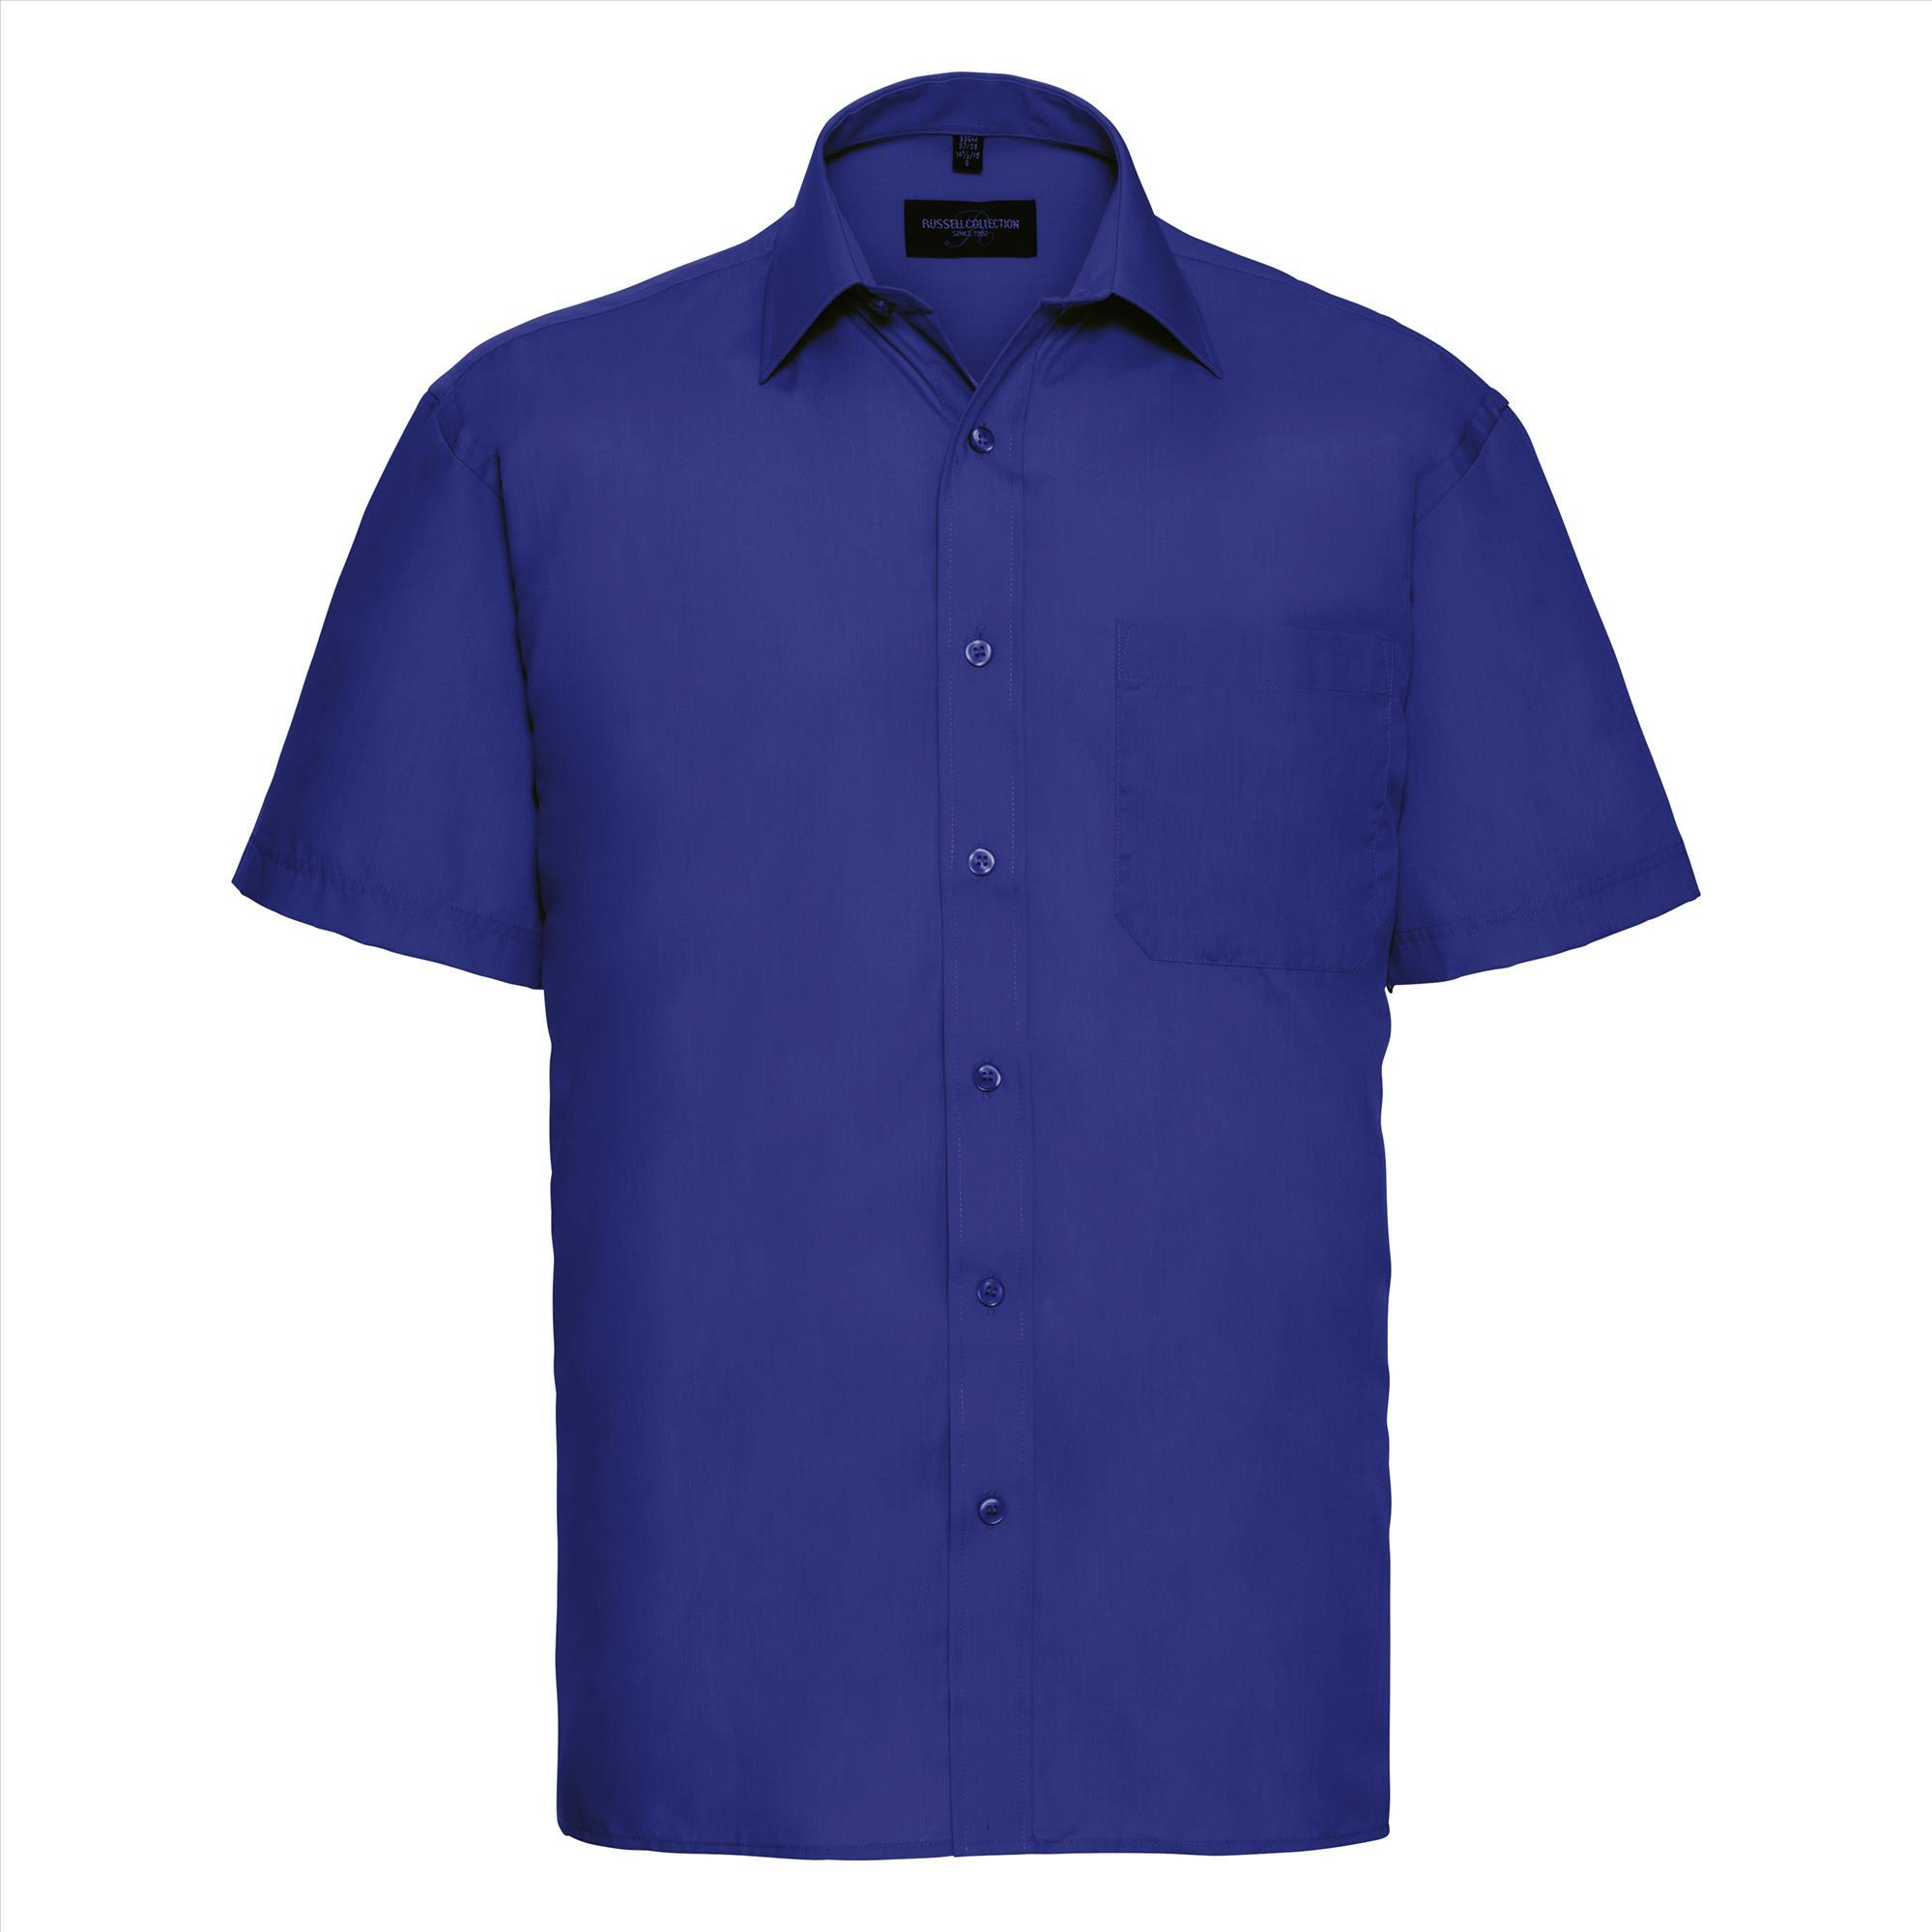 Heren overhemd royal blauw perfect voor bedrijfslogo bedrukking